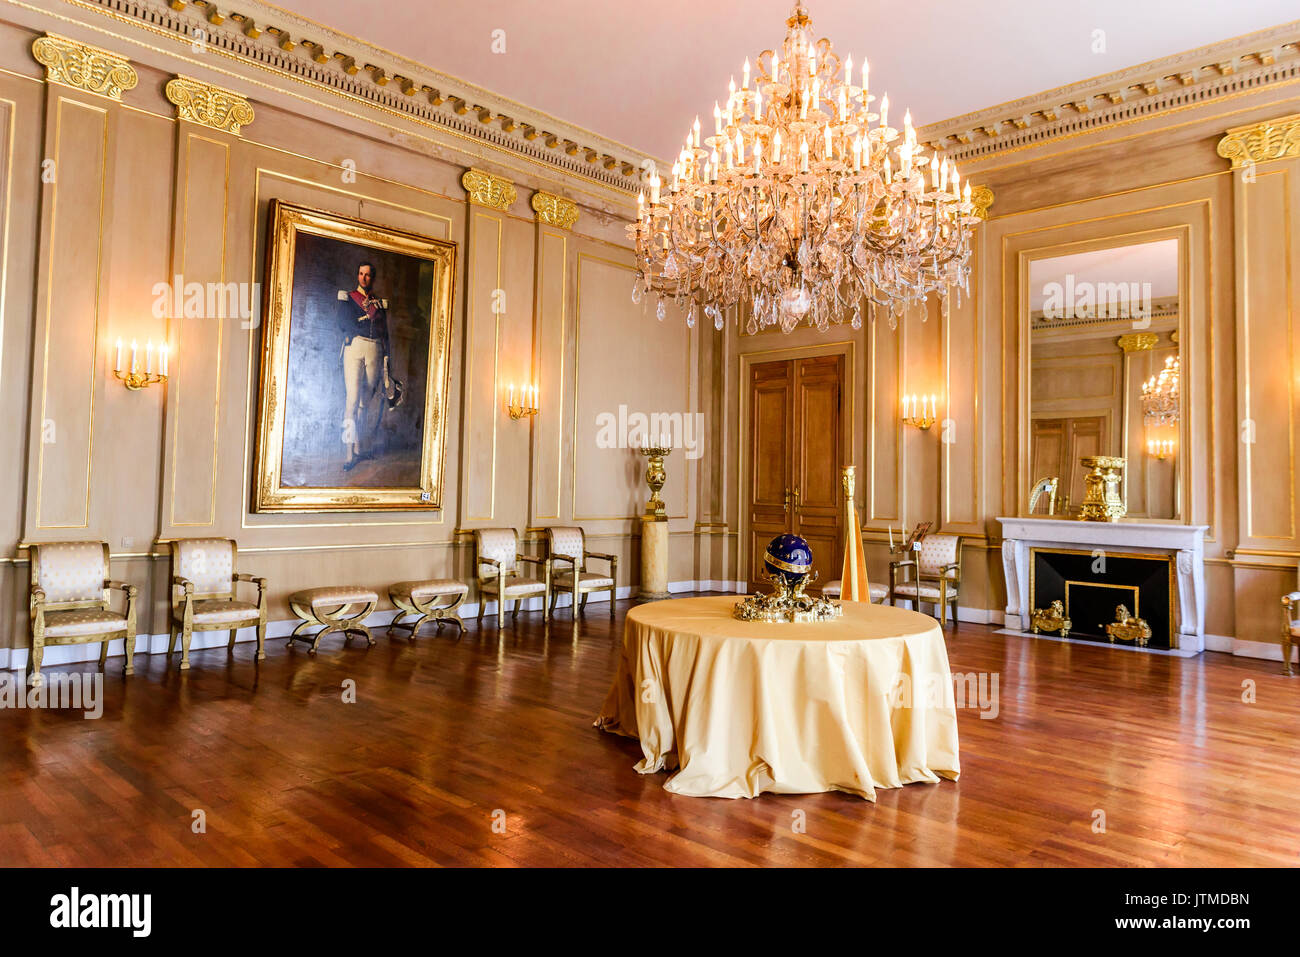 Bruselas, Bélgica - 13 de agosto de 2014: el Palacio Real de Bruselas, Bruselas, palacio oficial del Rey y la Reina de los Belgas. Foto de stock